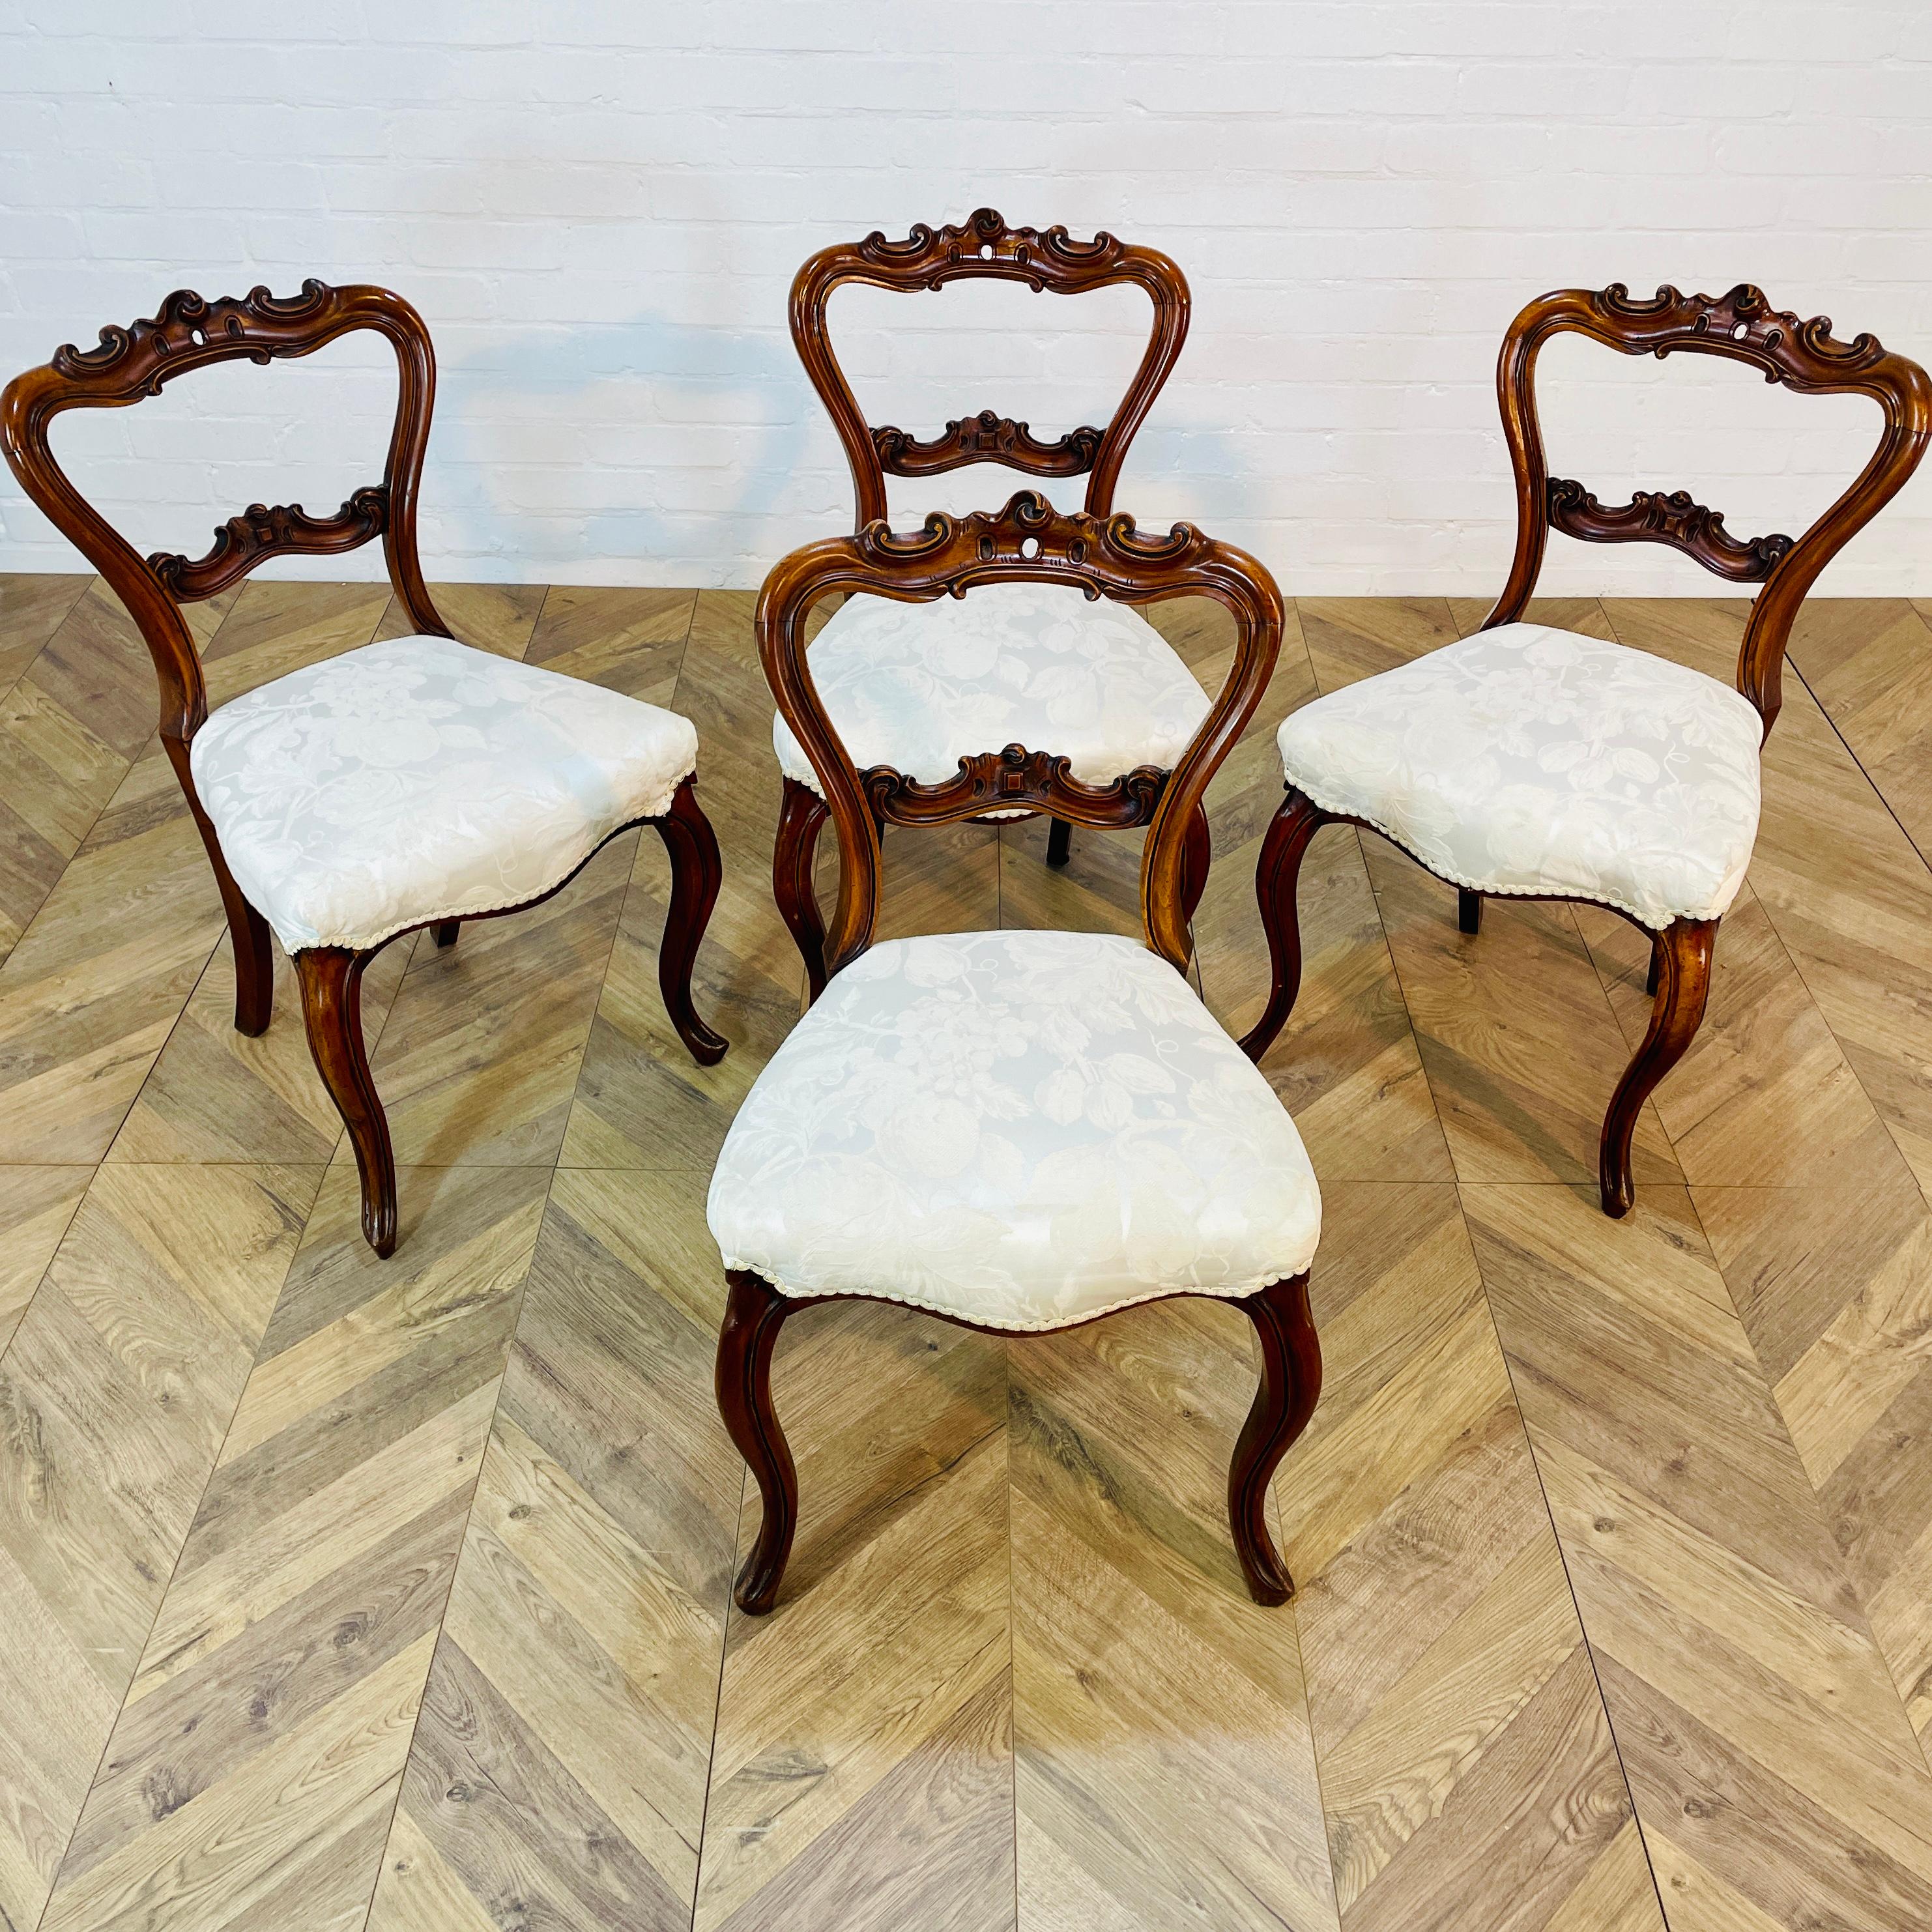 Ensemble de quatre merveilleuses chaises de salle à manger en palissandre massif du début de l'époque victorienne, vers 1840-1860. 

Ils sont d'une superbe qualité et présentent une belle A, avec des dossiers curvilignes et des pieds cabriole. 

Les